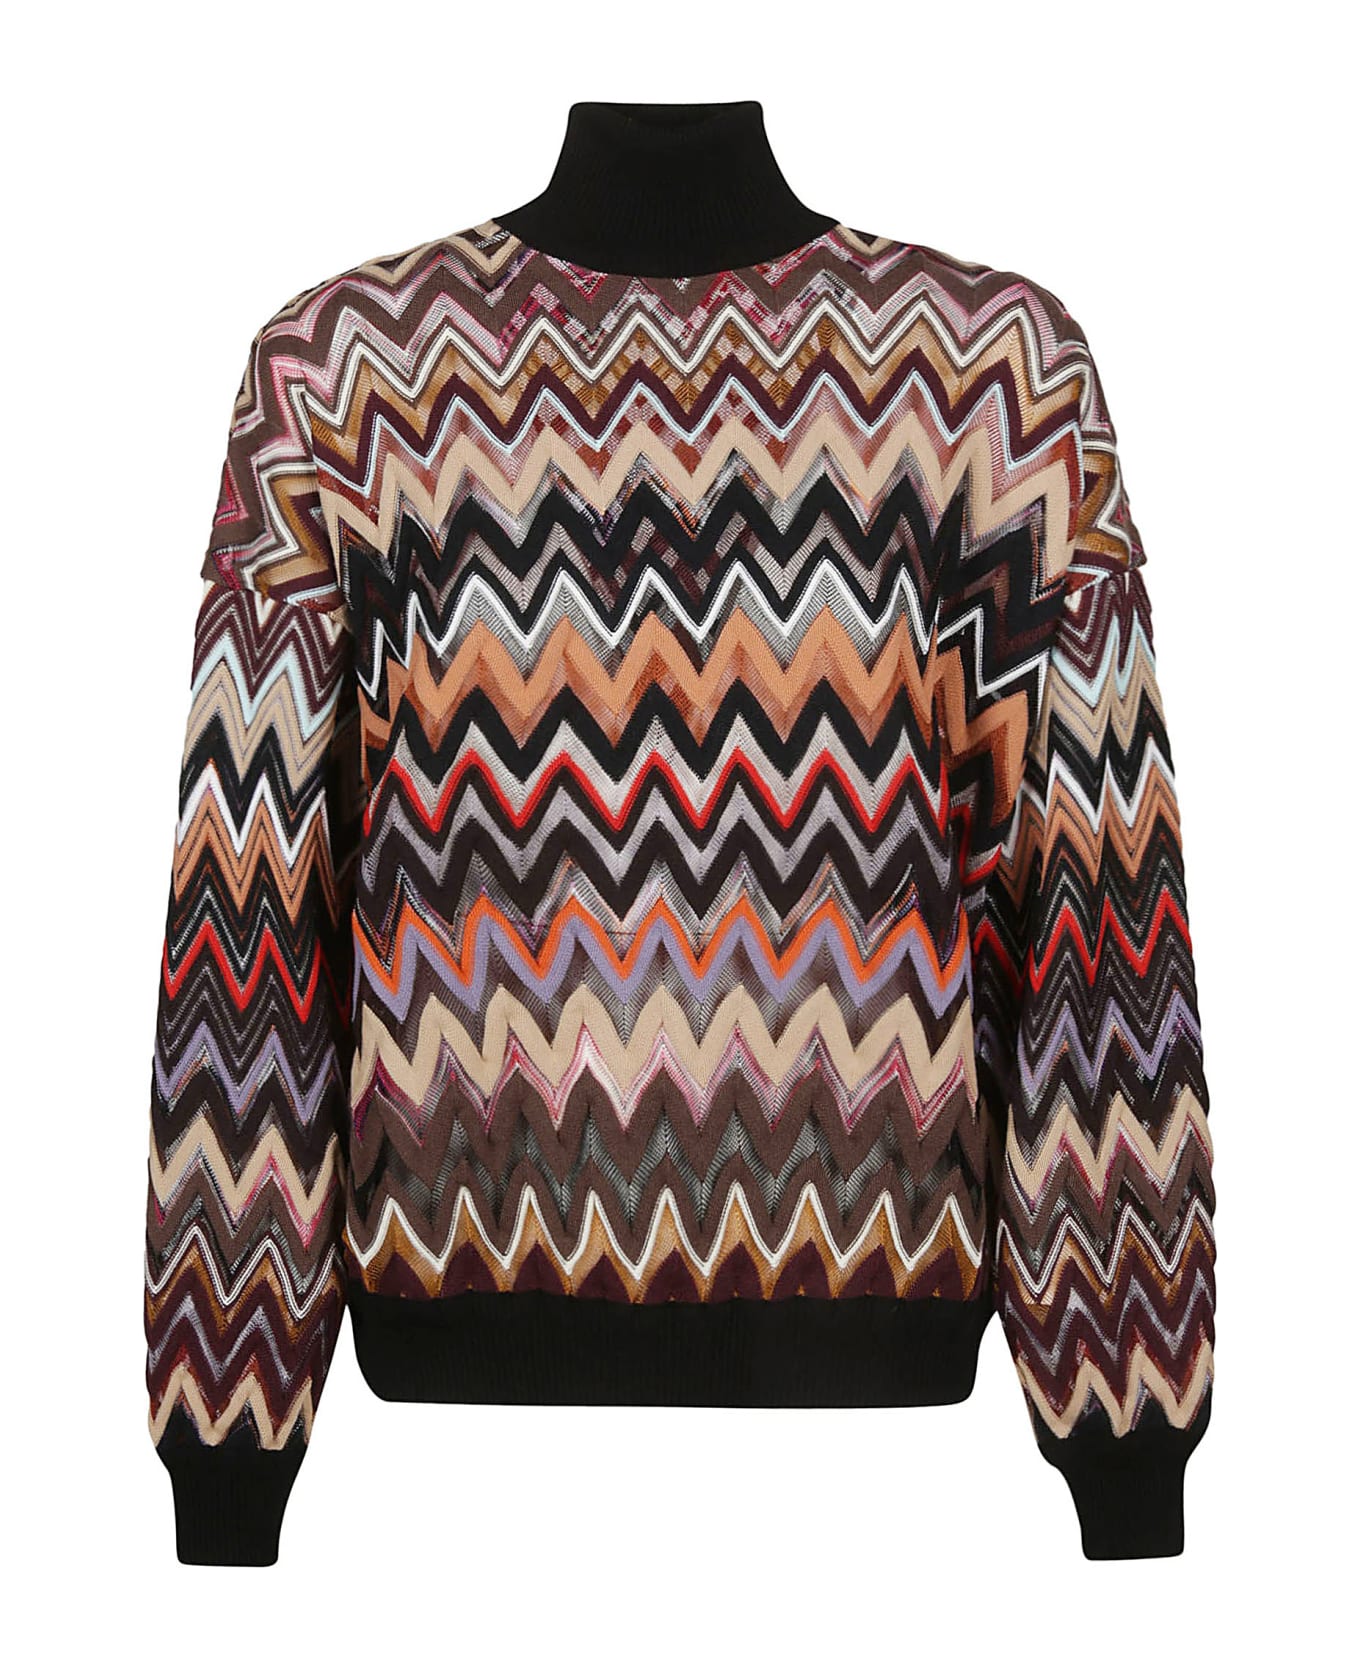 Missoni Turtle Neck Sweater - Multicolor Brown/black